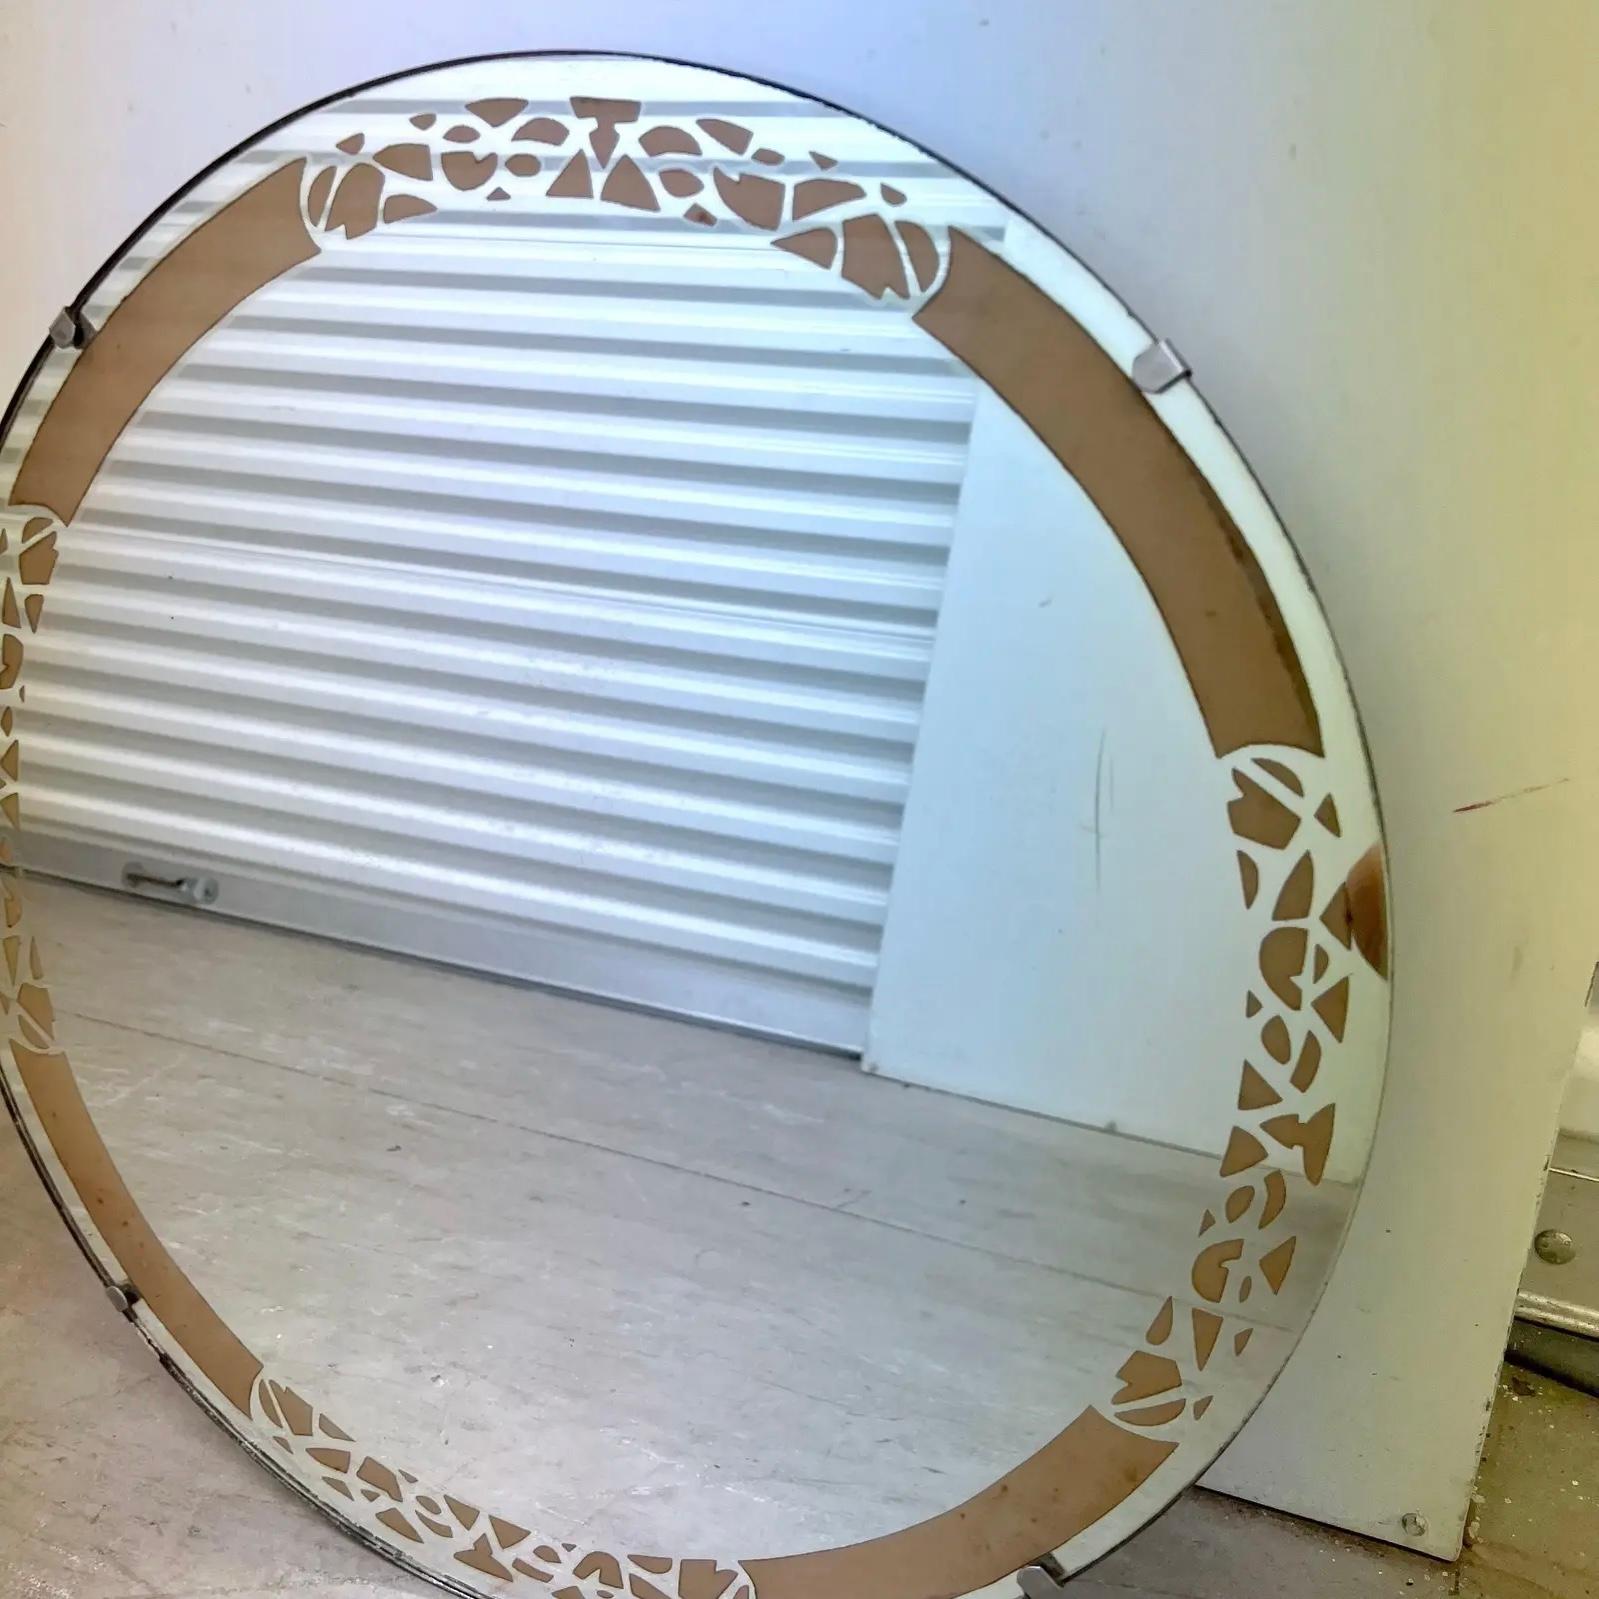 Un fantastique miroir rond vintage Art of Vintage avec une bordure décorative peinte en or rose.  C. Fin des années 1970 - début des années 1980 